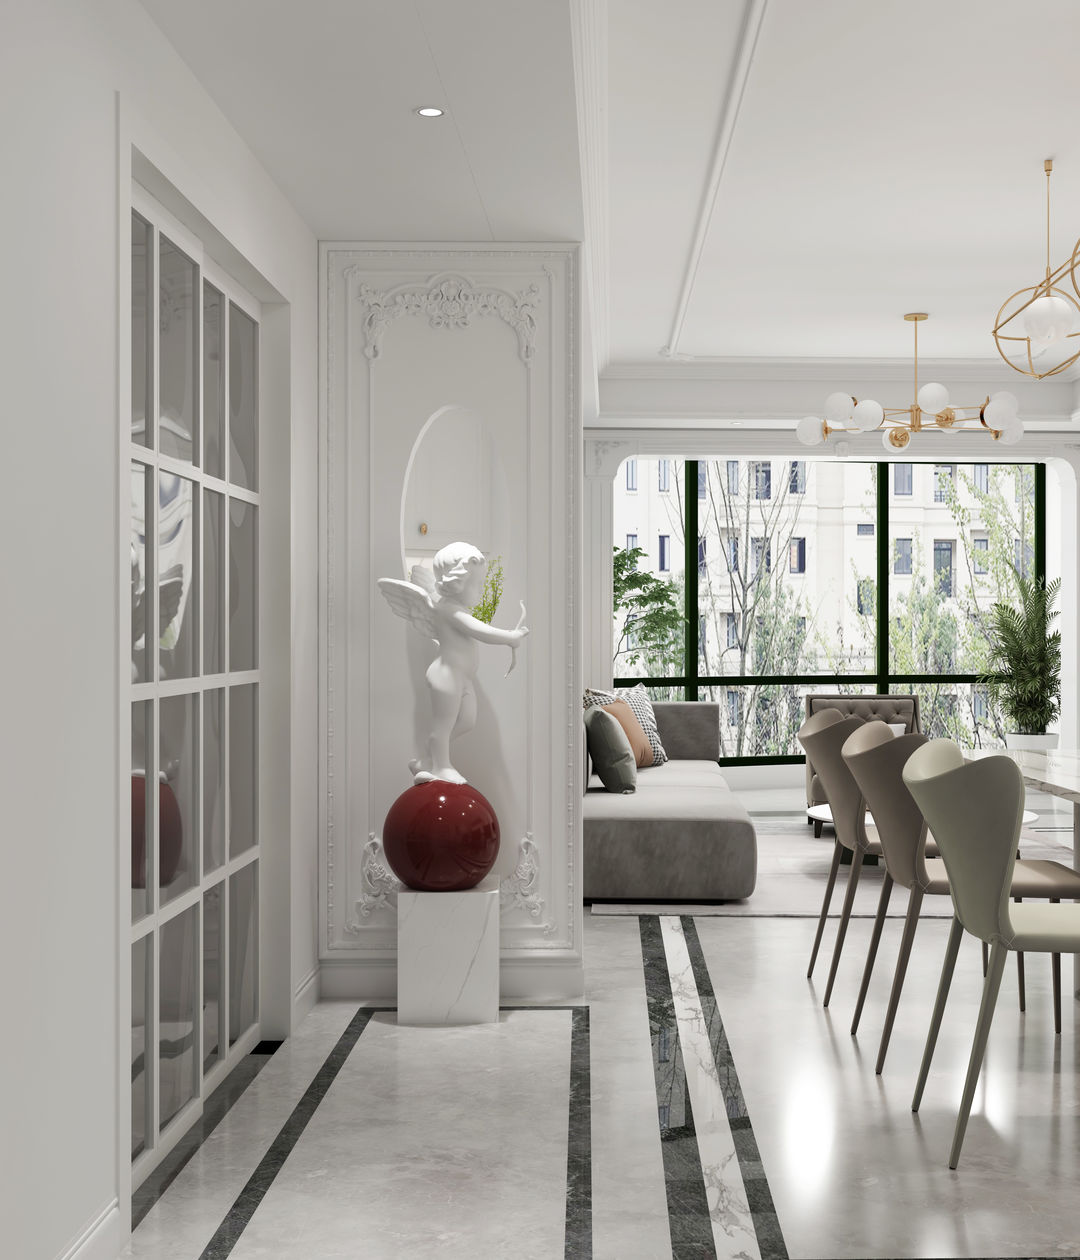 客厅作为待客区域，一般要求简洁明快，同时装修较其它空间要更明快光鲜，通常使用大量的石材和木饰面装饰